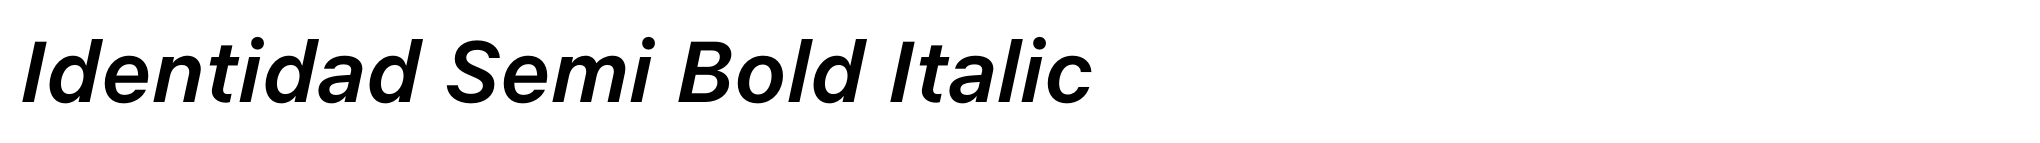 Identidad Semi Bold Italic image